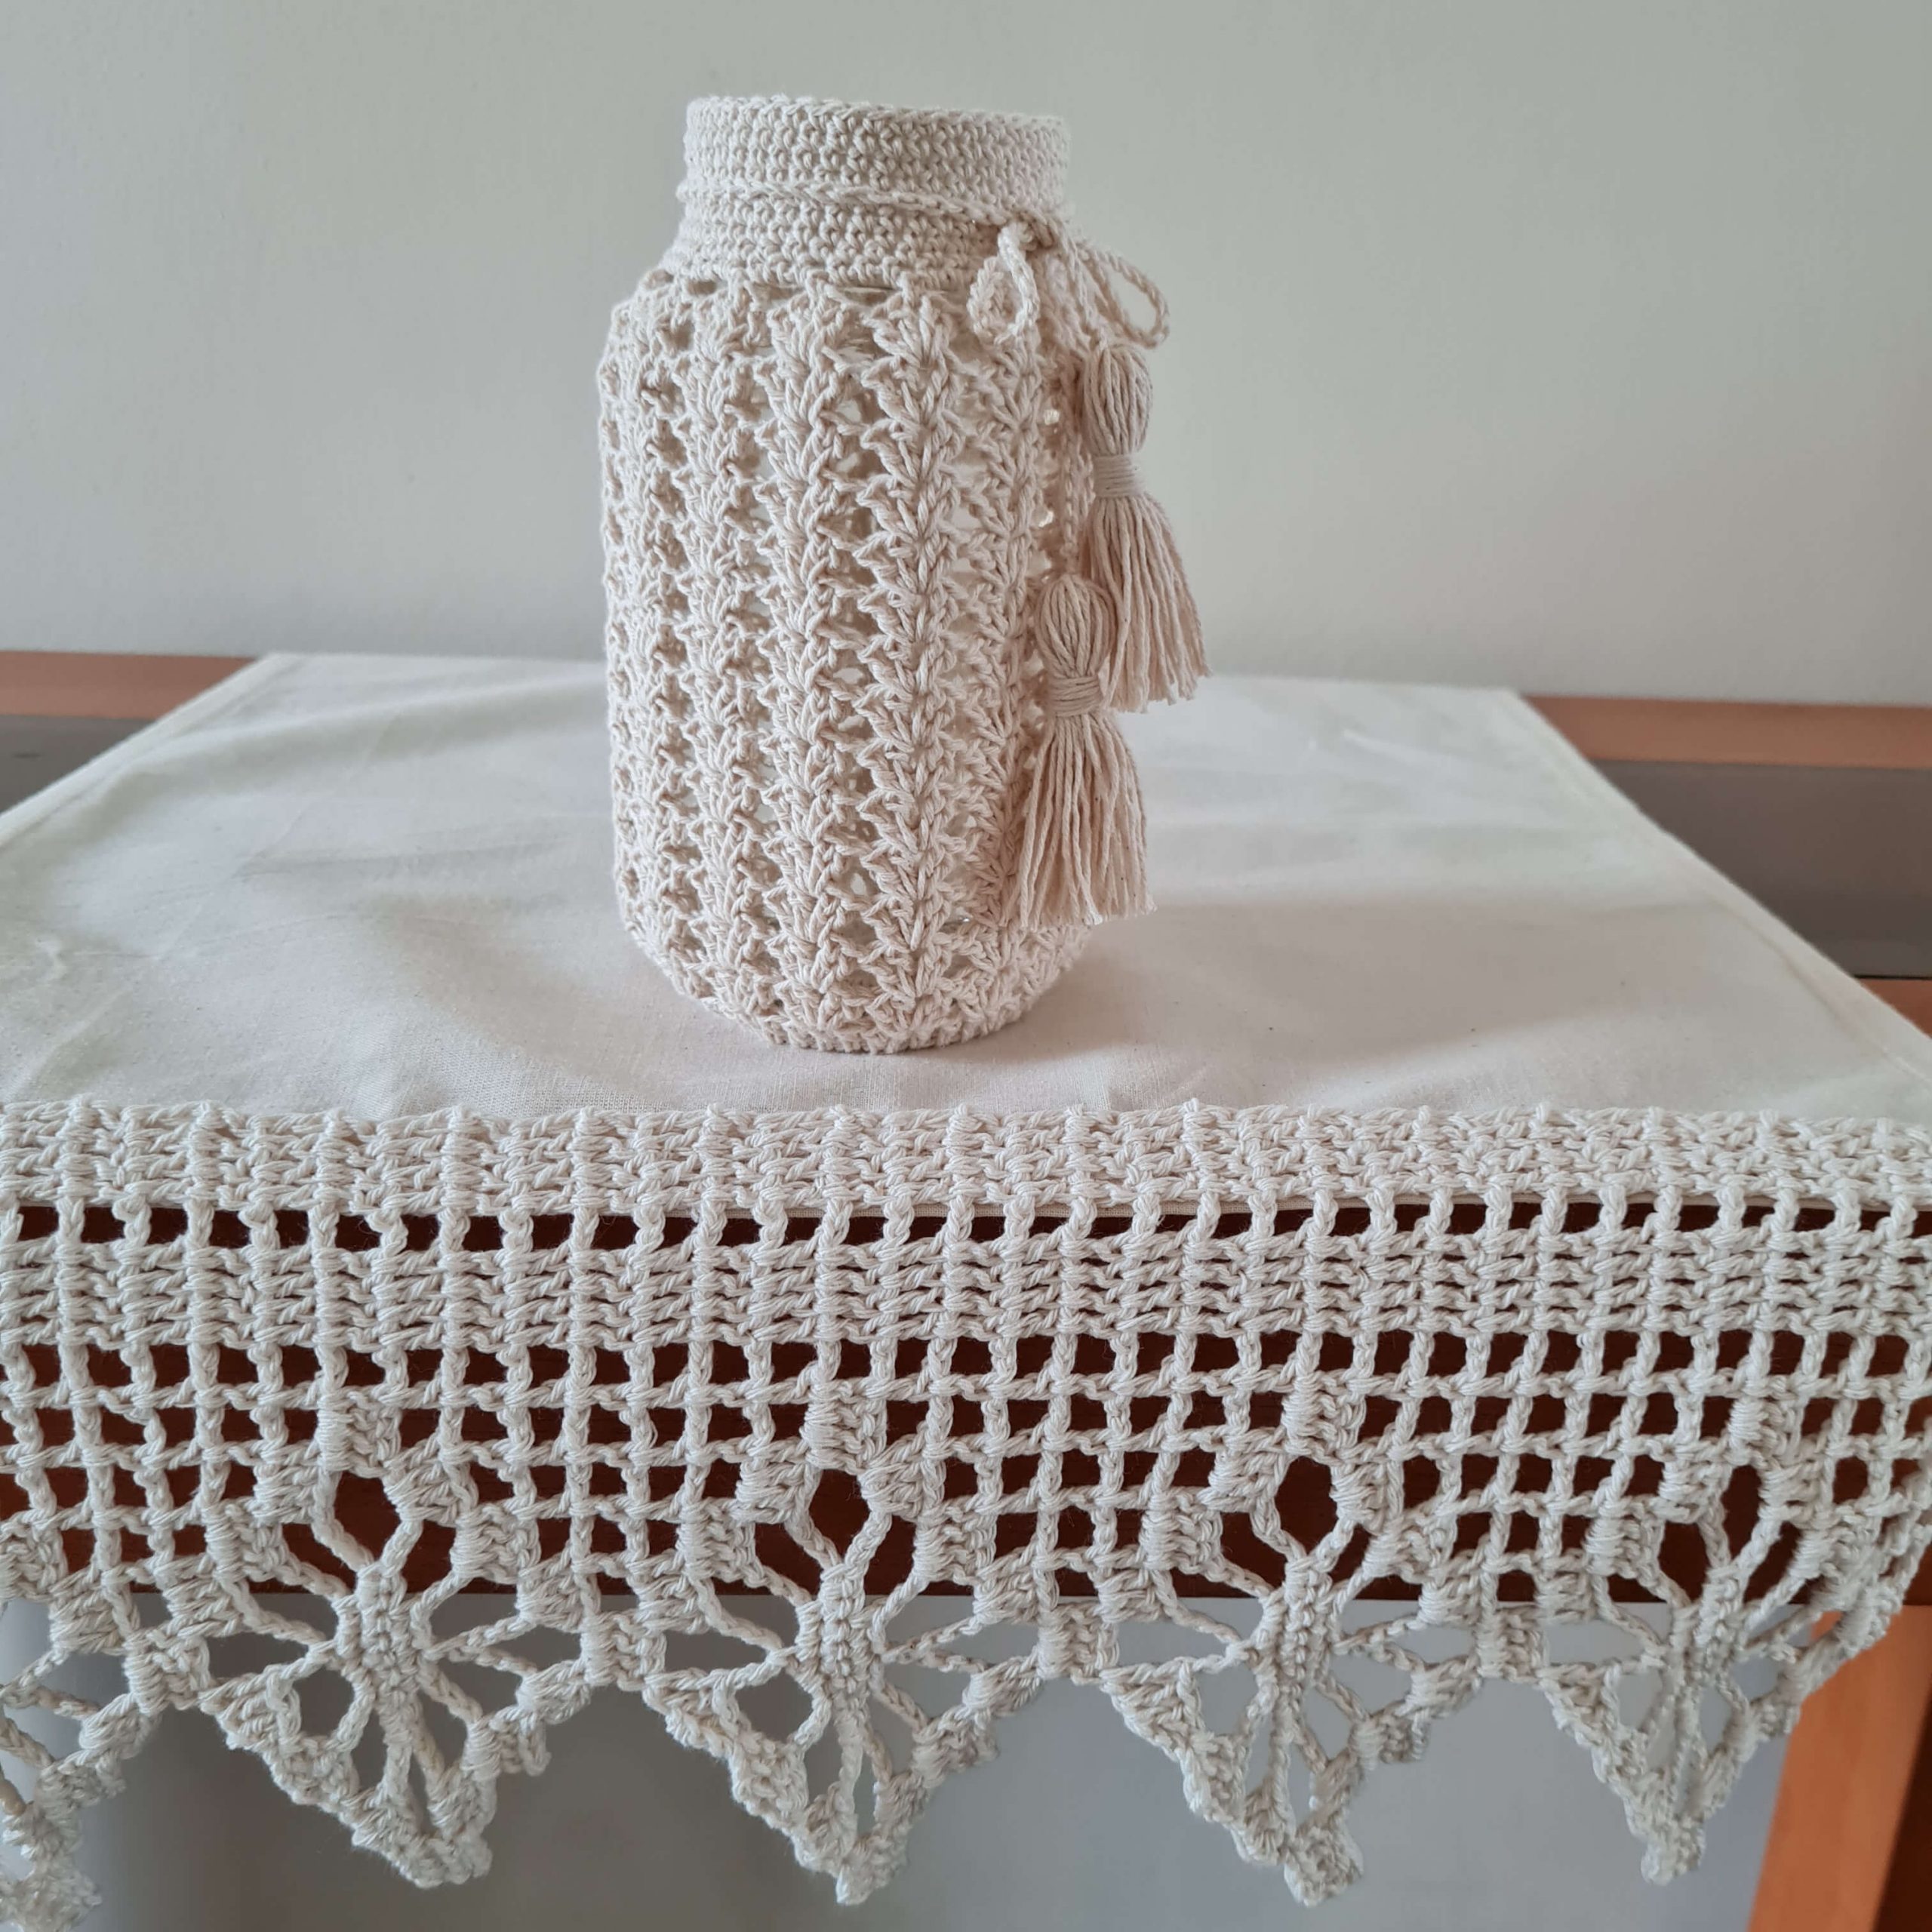 Botella decorada con tejido a crochet 4